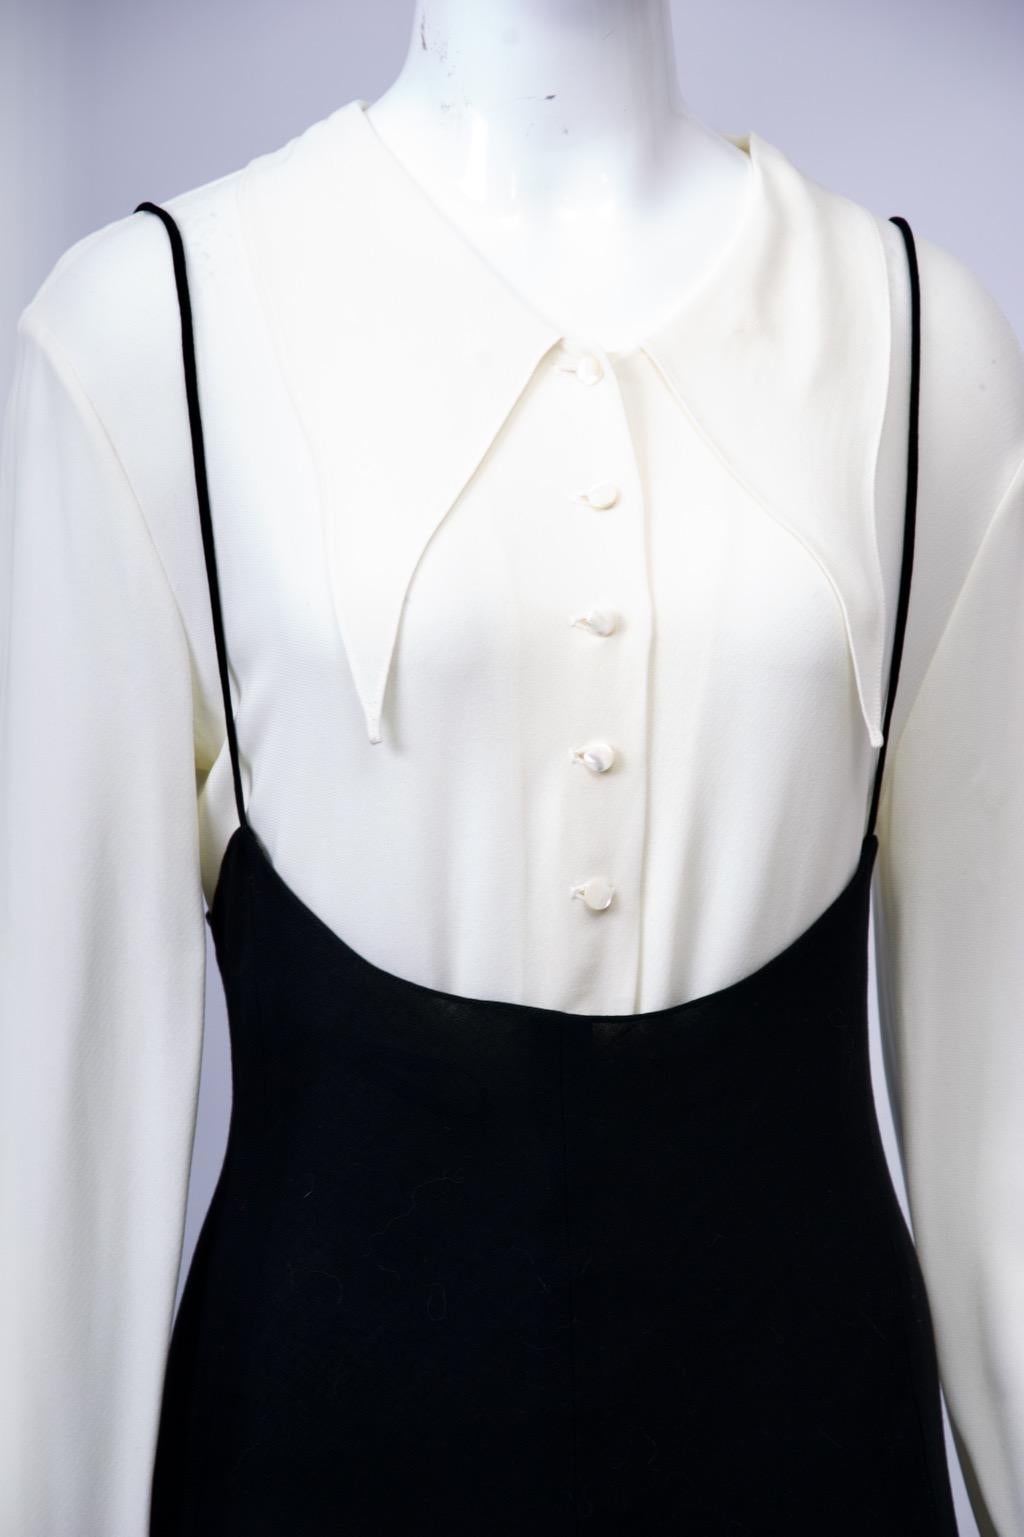 Vintage-Ensemble von Donna Karan, ca. 1990er Jahre, mit ihren charakteristischen Designs - dem Bodysuit und der einfachen schwarzen Form. Hier ist der Body eine romantische weiße Bluse mit einem großen spitzen Kragen mit winzigen Perlenknöpfen auf